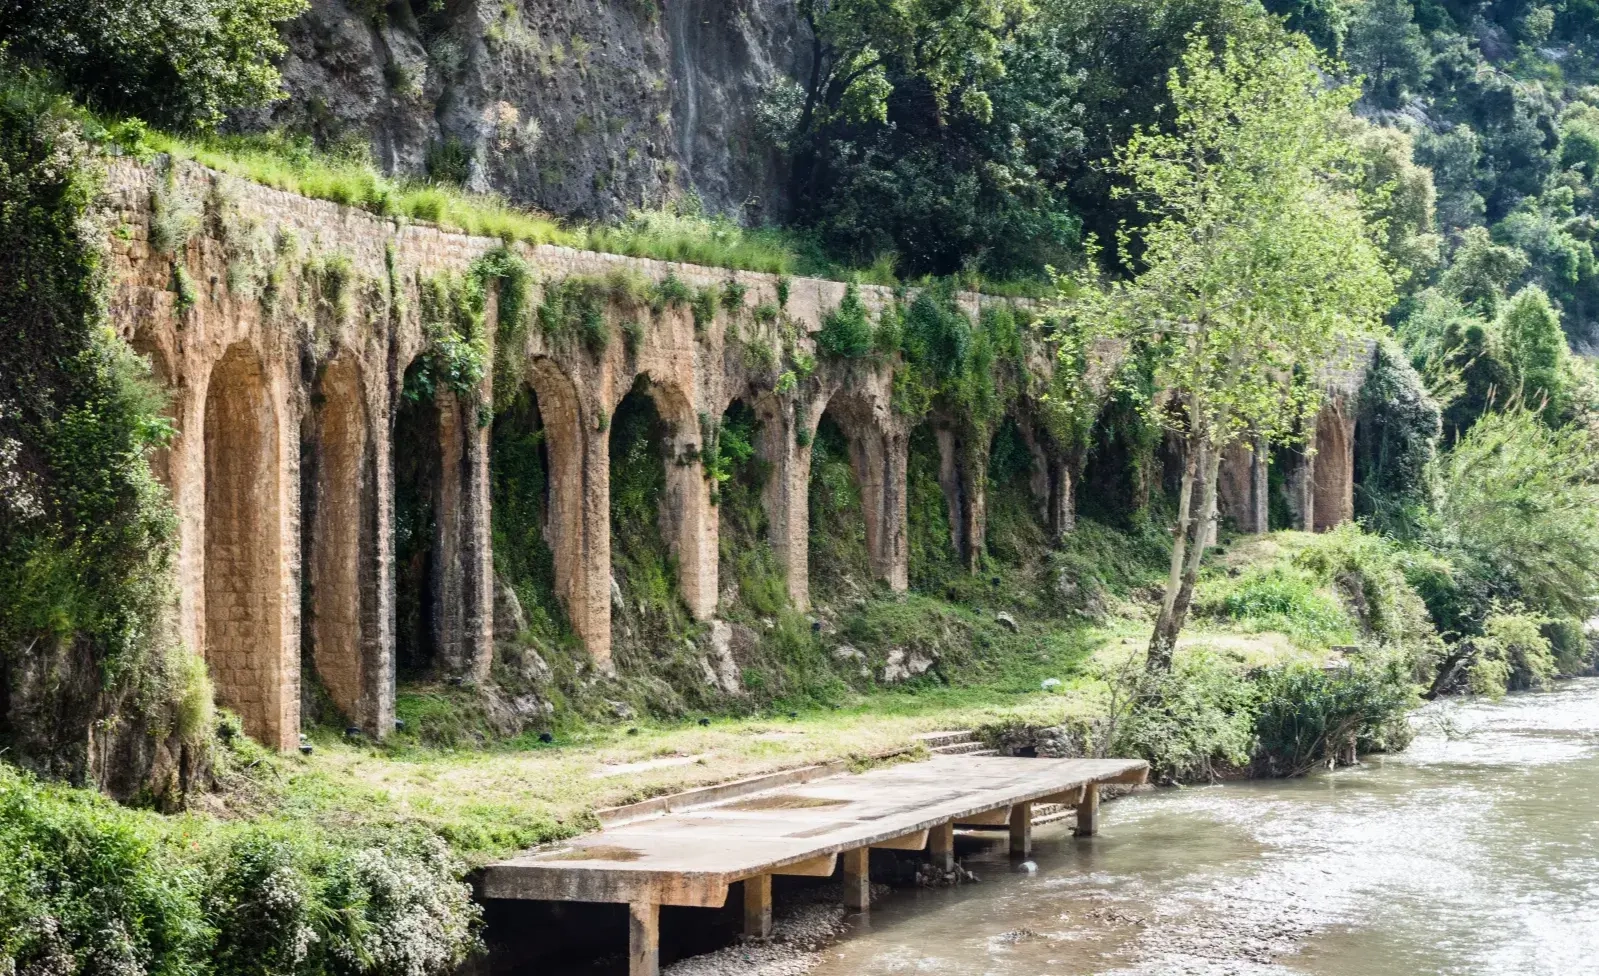 Roman aqueduct in Nahr el Kalb